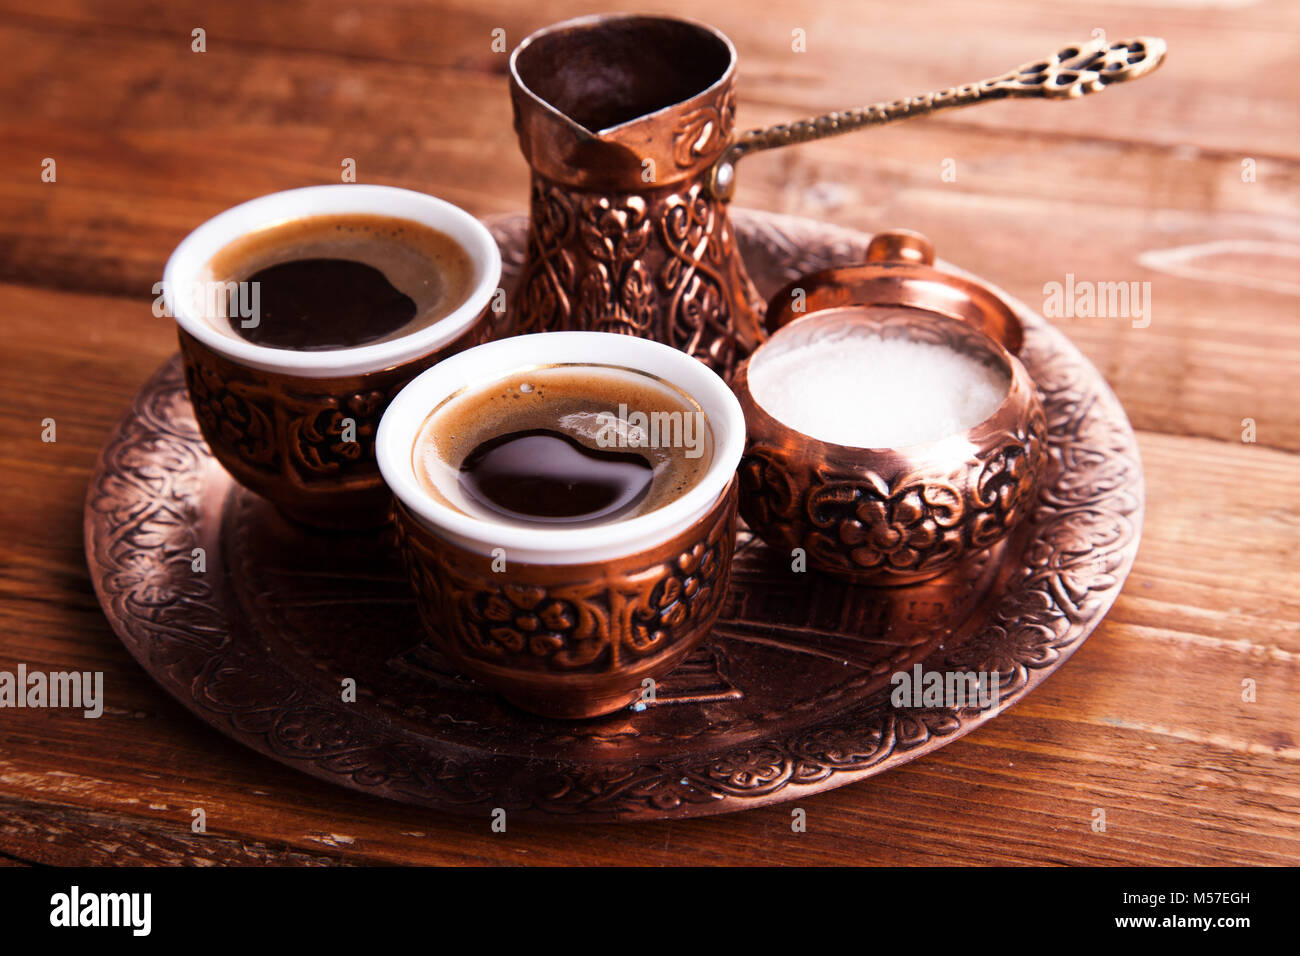 Antik Bronze Krug und Kaffee Tasse mit Terminen, die in einem Fach auf  einem weißen Hintergrund, türkischer Kaffee auf hölzernen Hintergrund  eingestellt Stockfotografie - Alamy